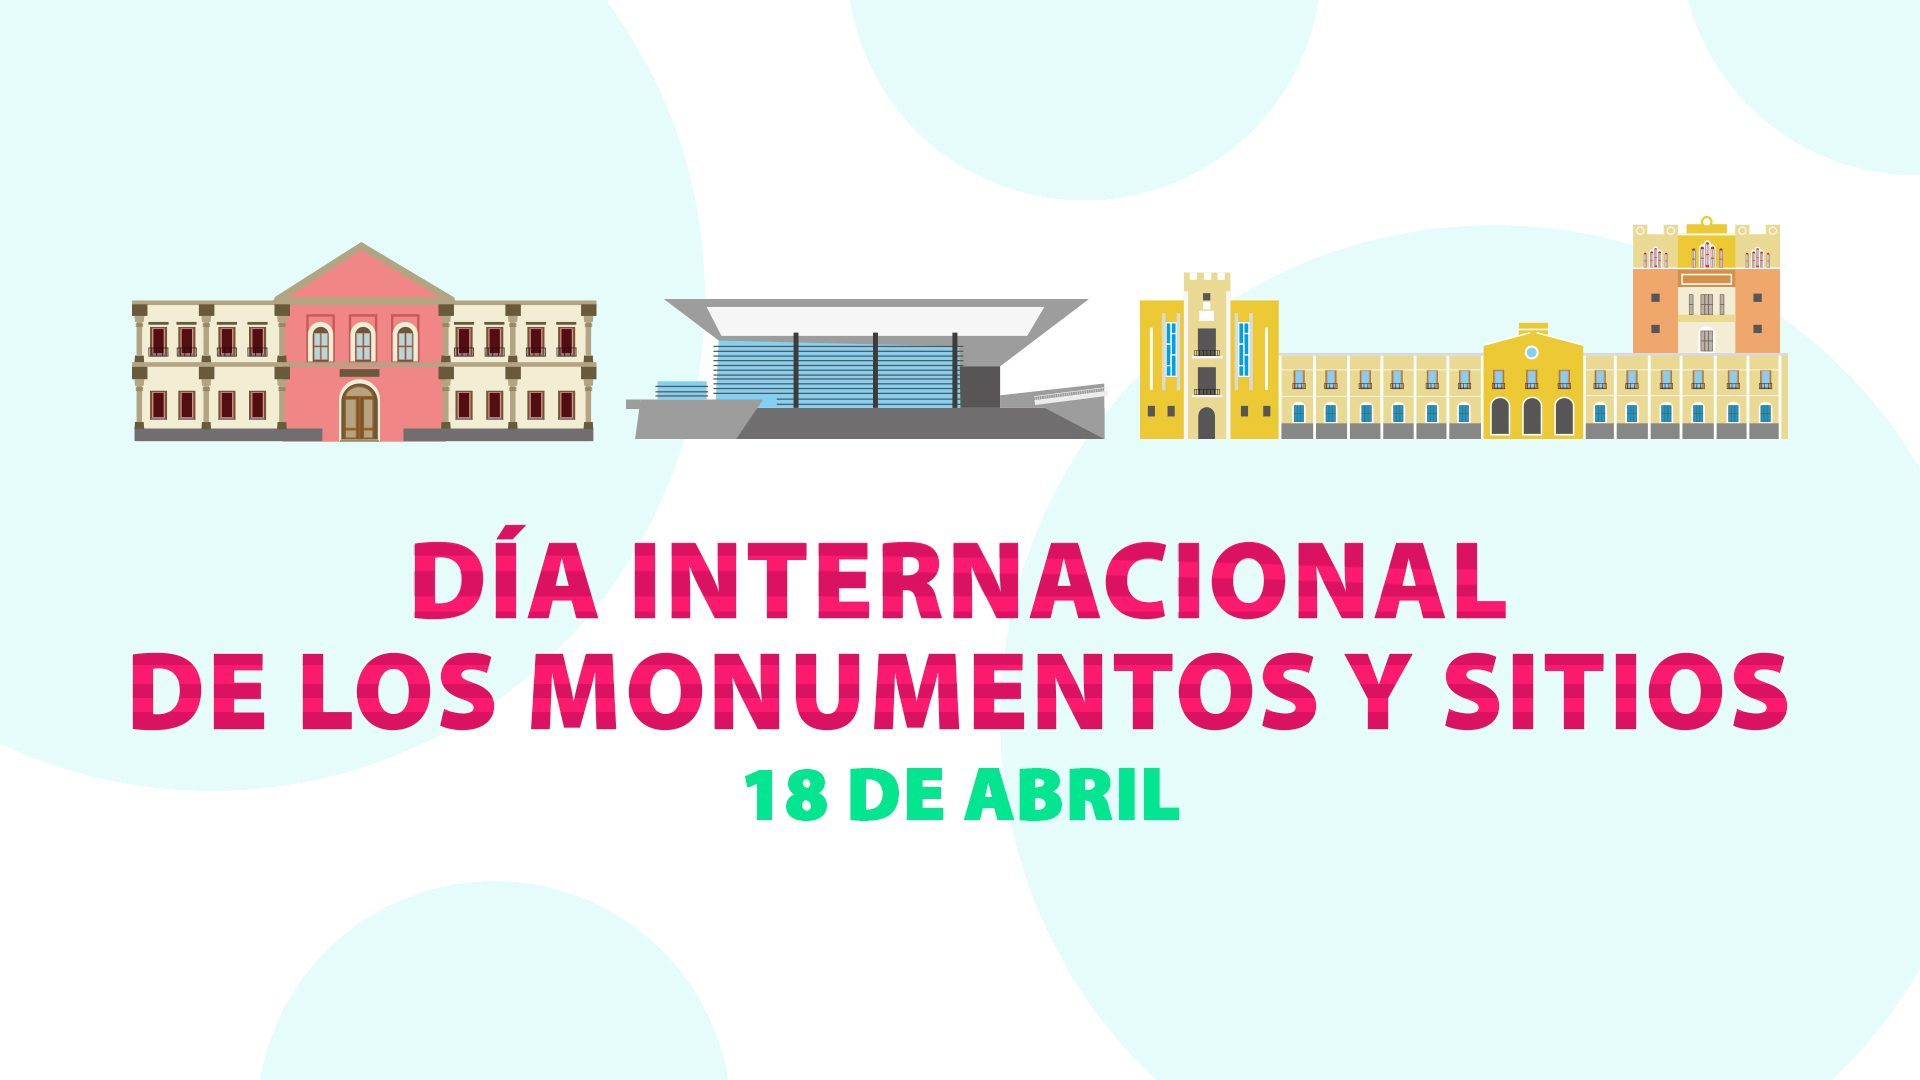 Dia Internacional de los Monumentos y Sitios